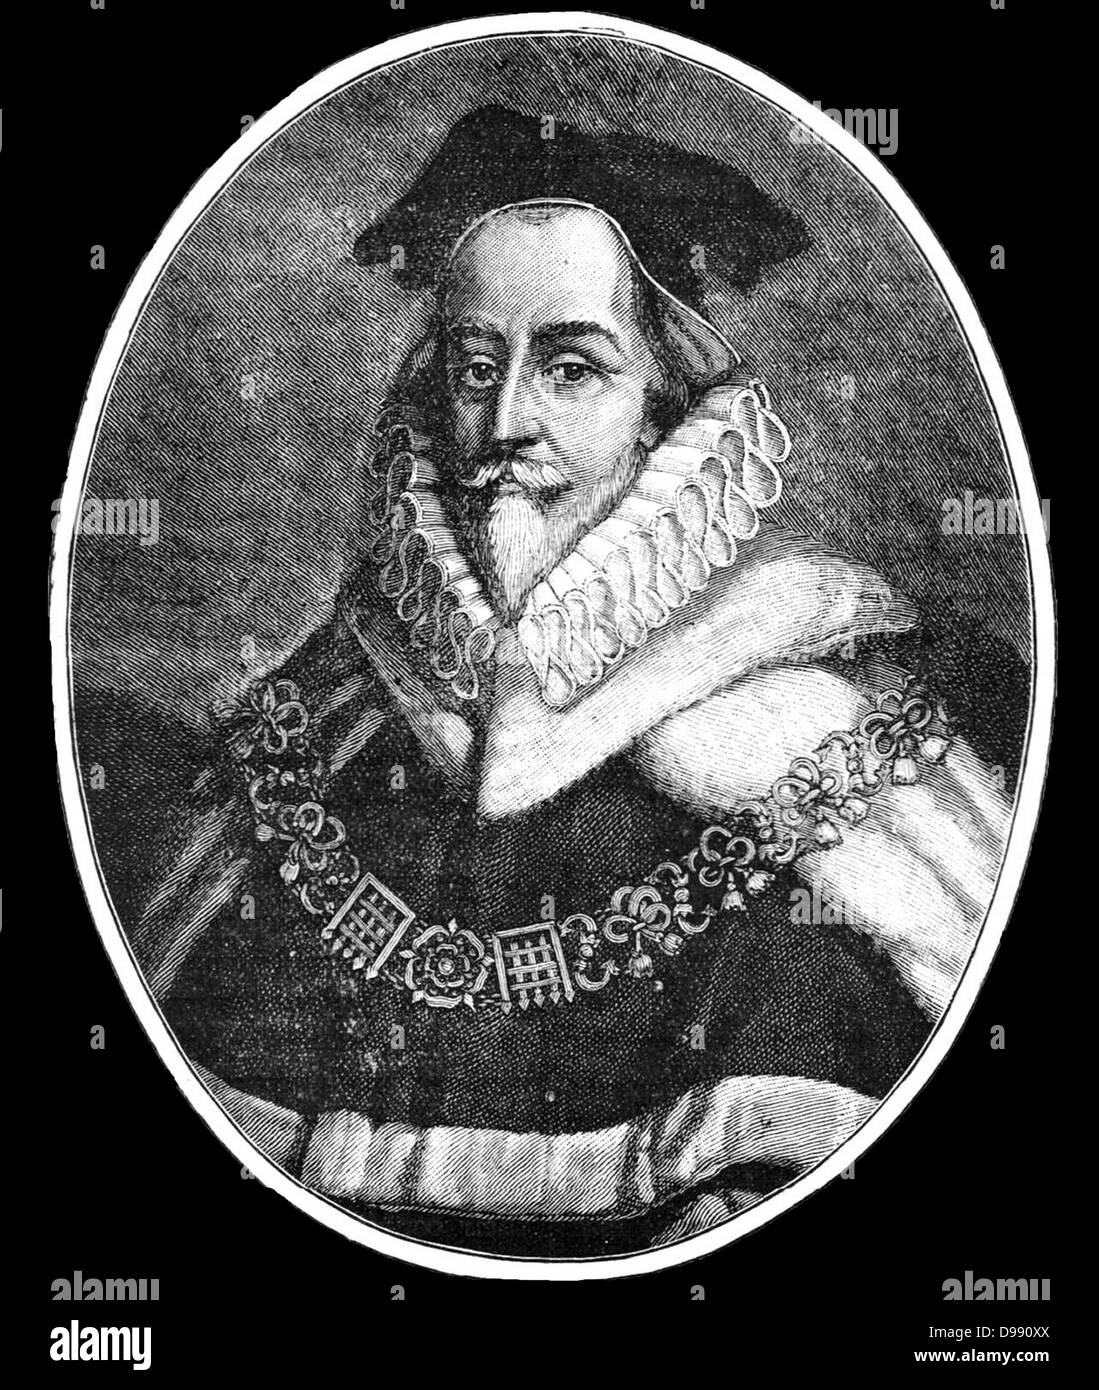 Sir Edward Coke (prononcé 'cook') (1 février 1552 - 3 septembre 1634), était un premier entrepreneur colonial anglais et juriste Banque D'Images